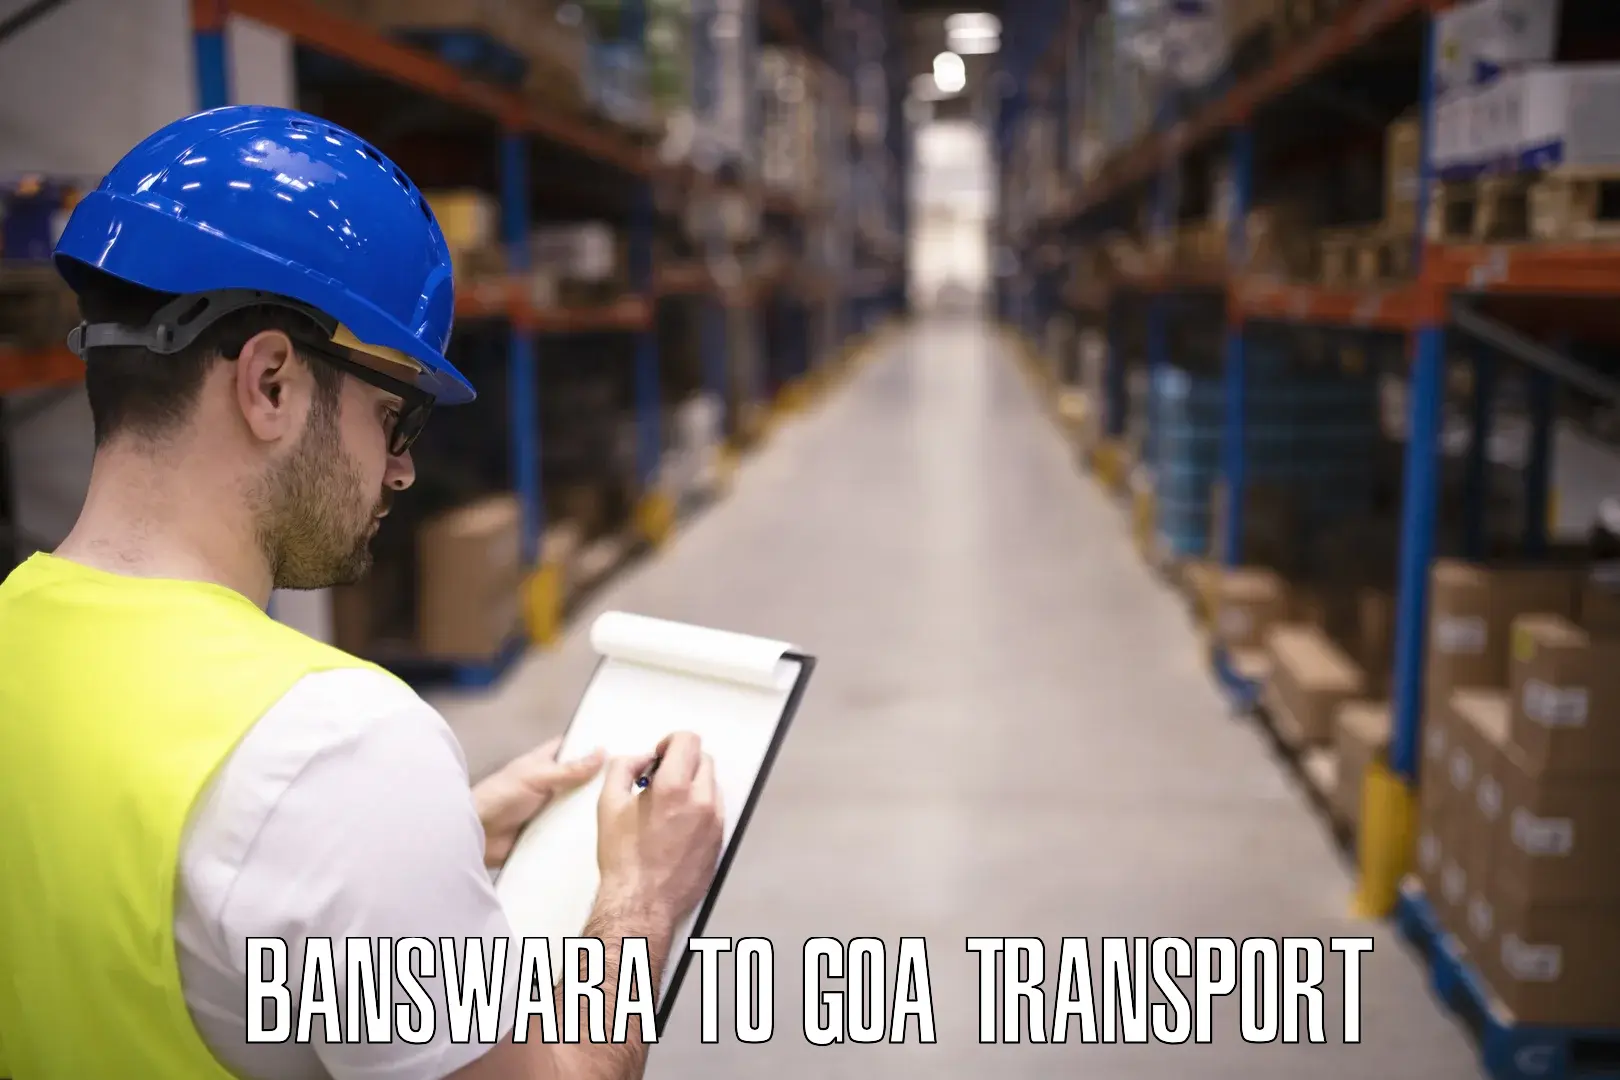 Interstate transport services Banswara to Goa